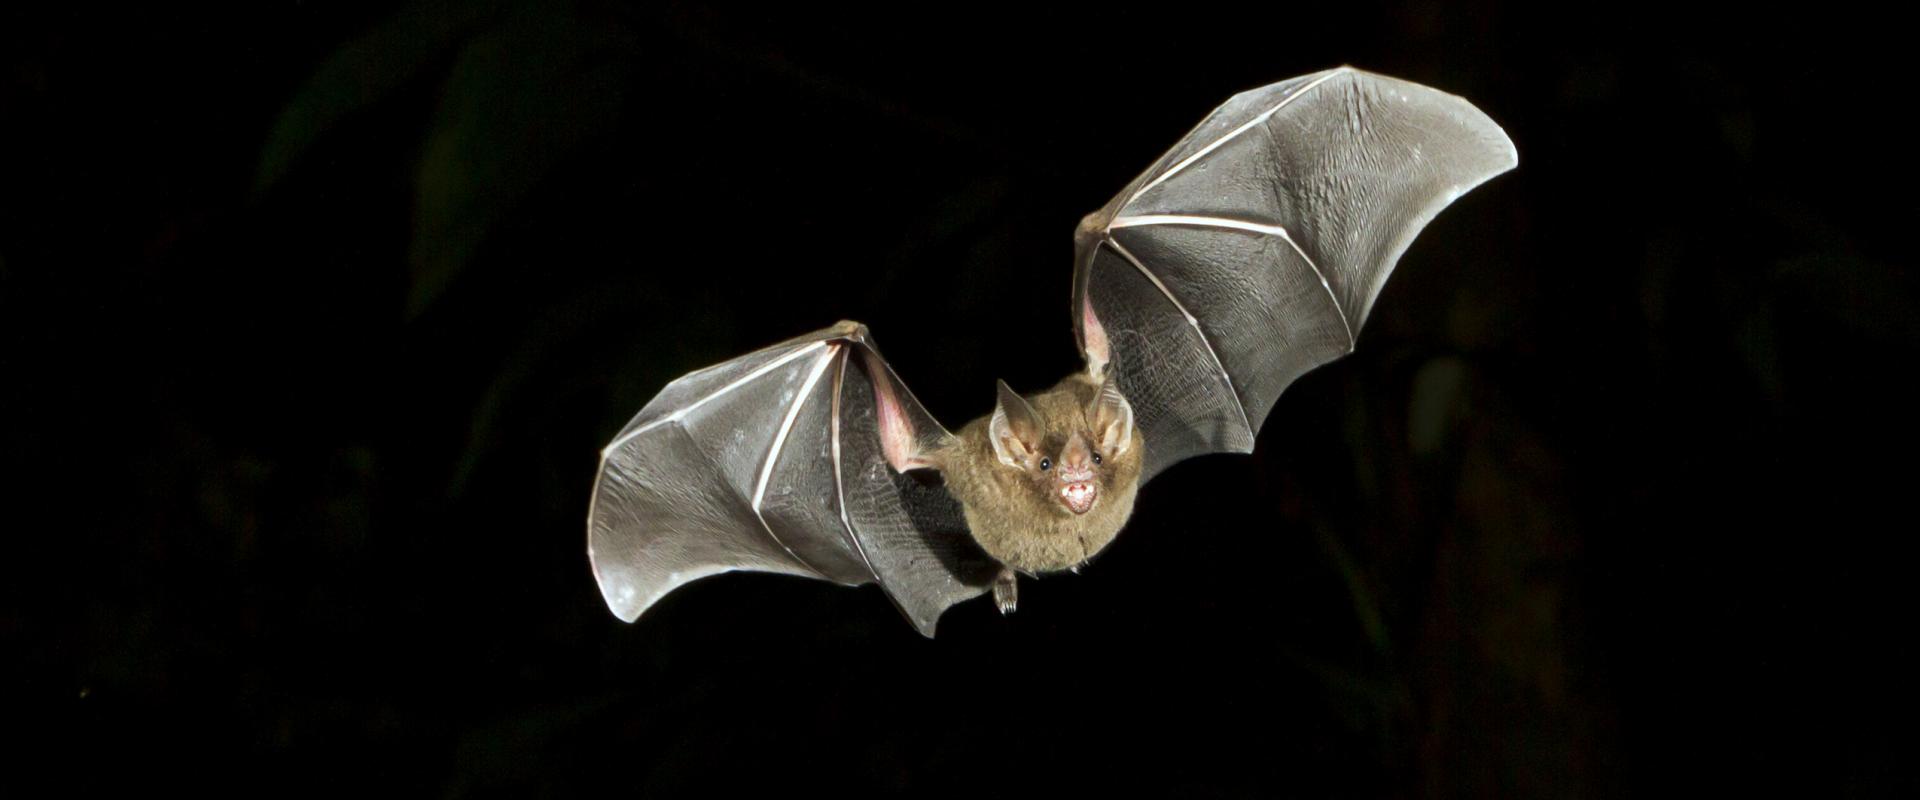 Bat flying against black background